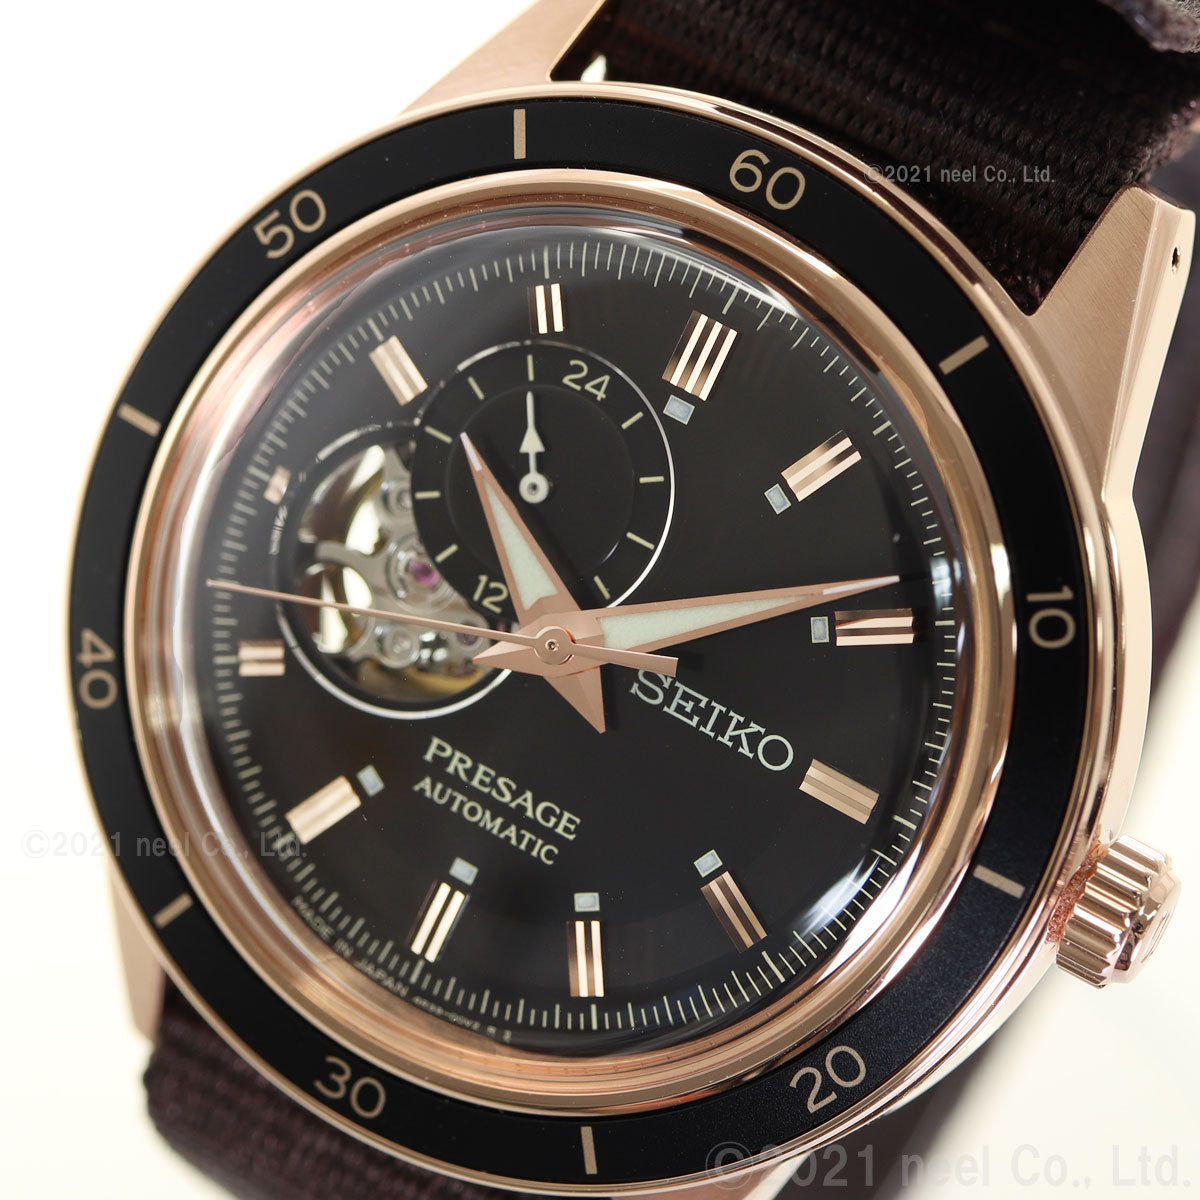 セイコー プレザージュ SEIKO PRESAGE 自動巻き メカニカル 腕時計 メンズ セミスケルトン SARY192